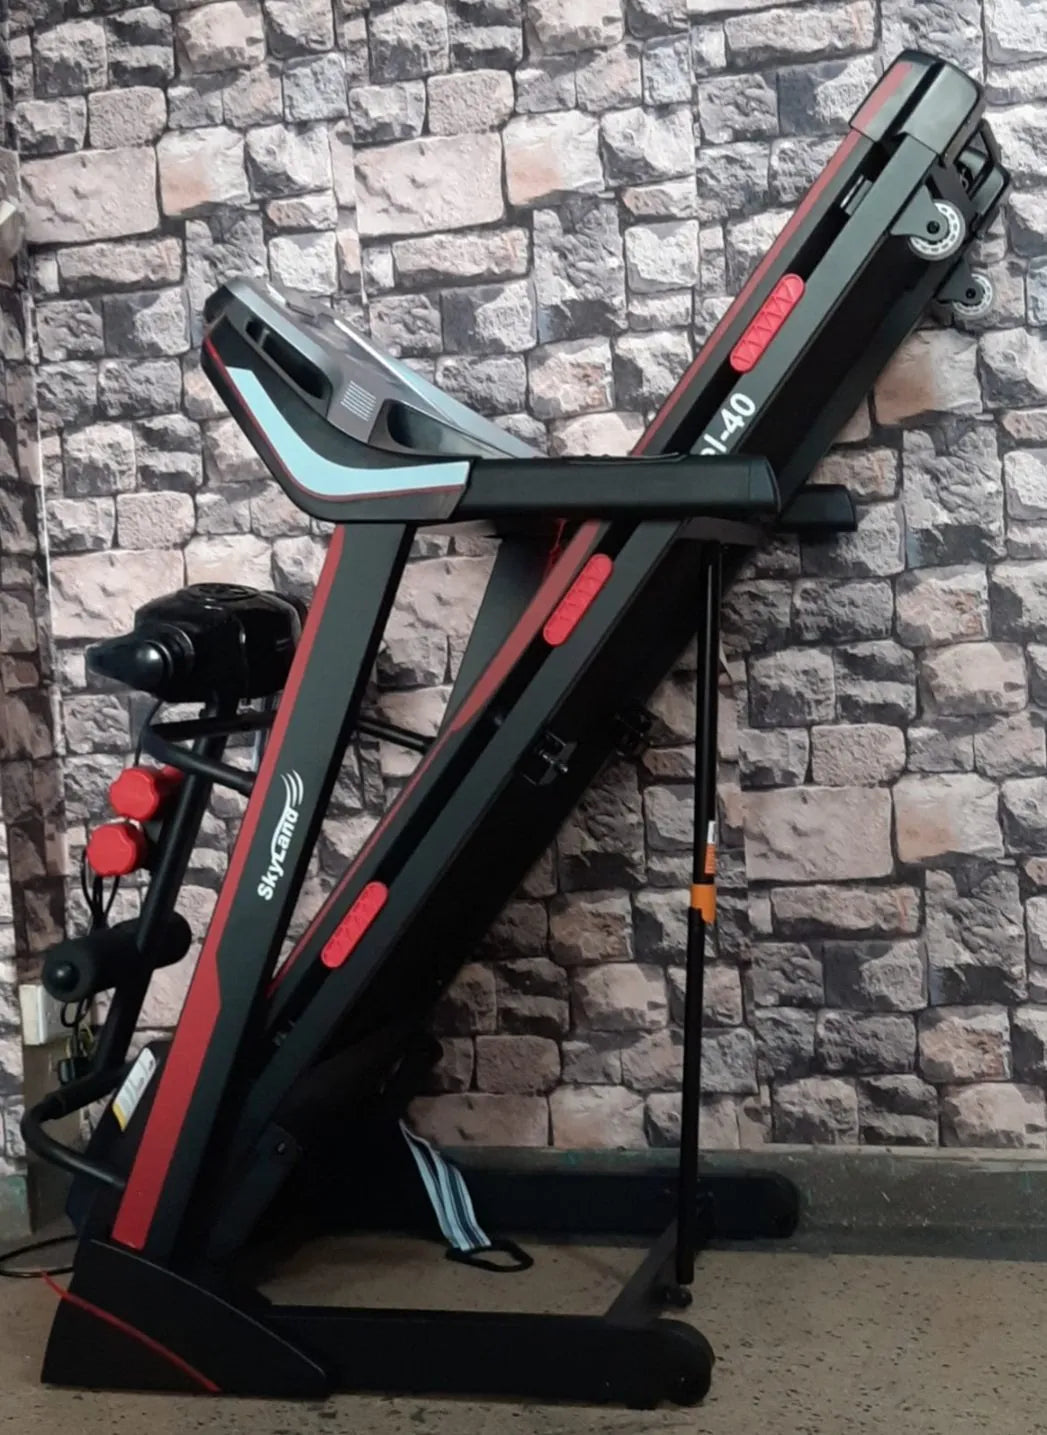 Skyland treadmill Intel-40 with Massager